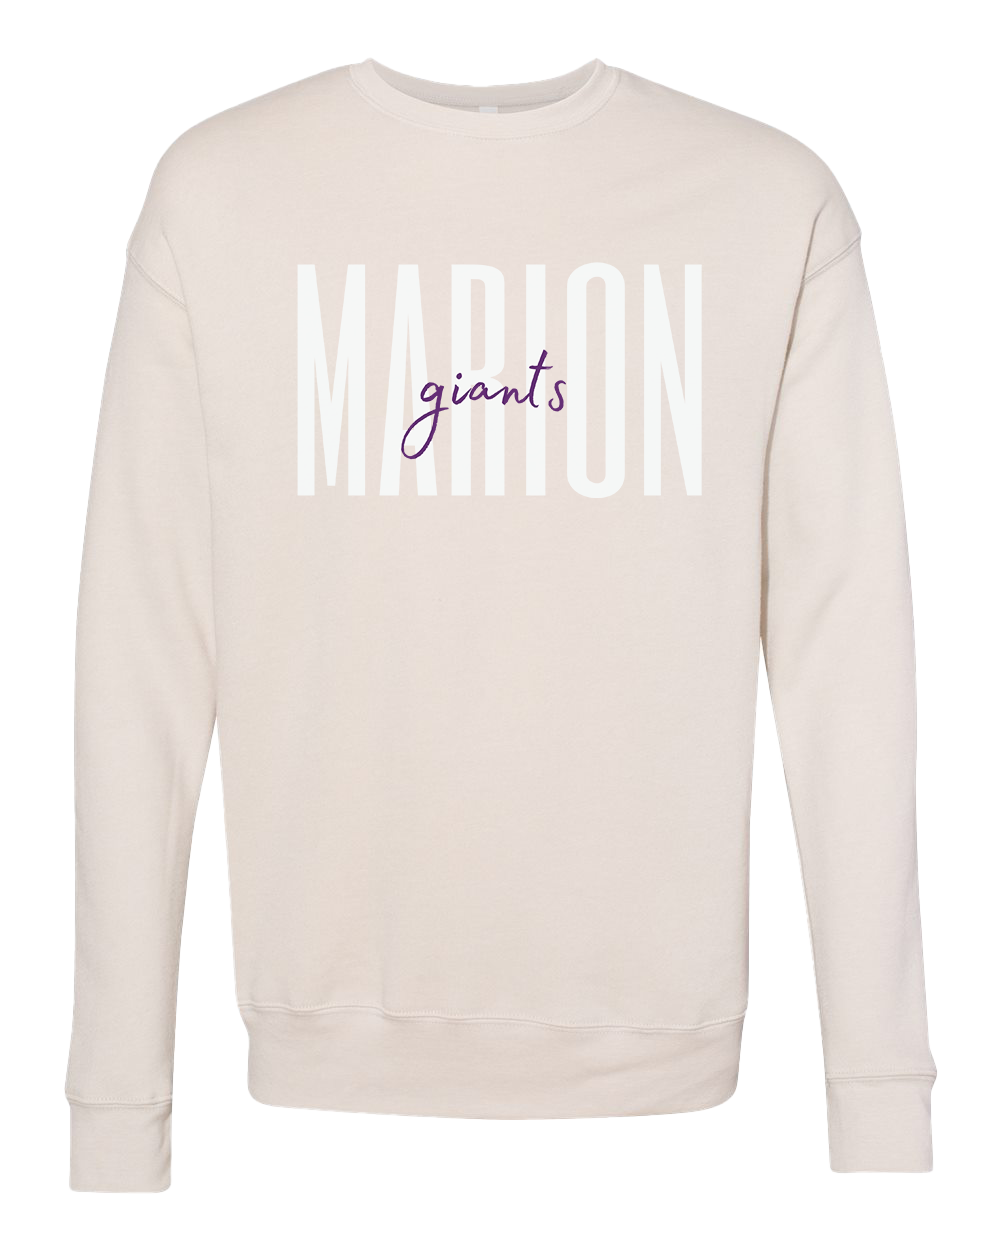 Marion Giants Script Crew Sweatshirt - Various Colors